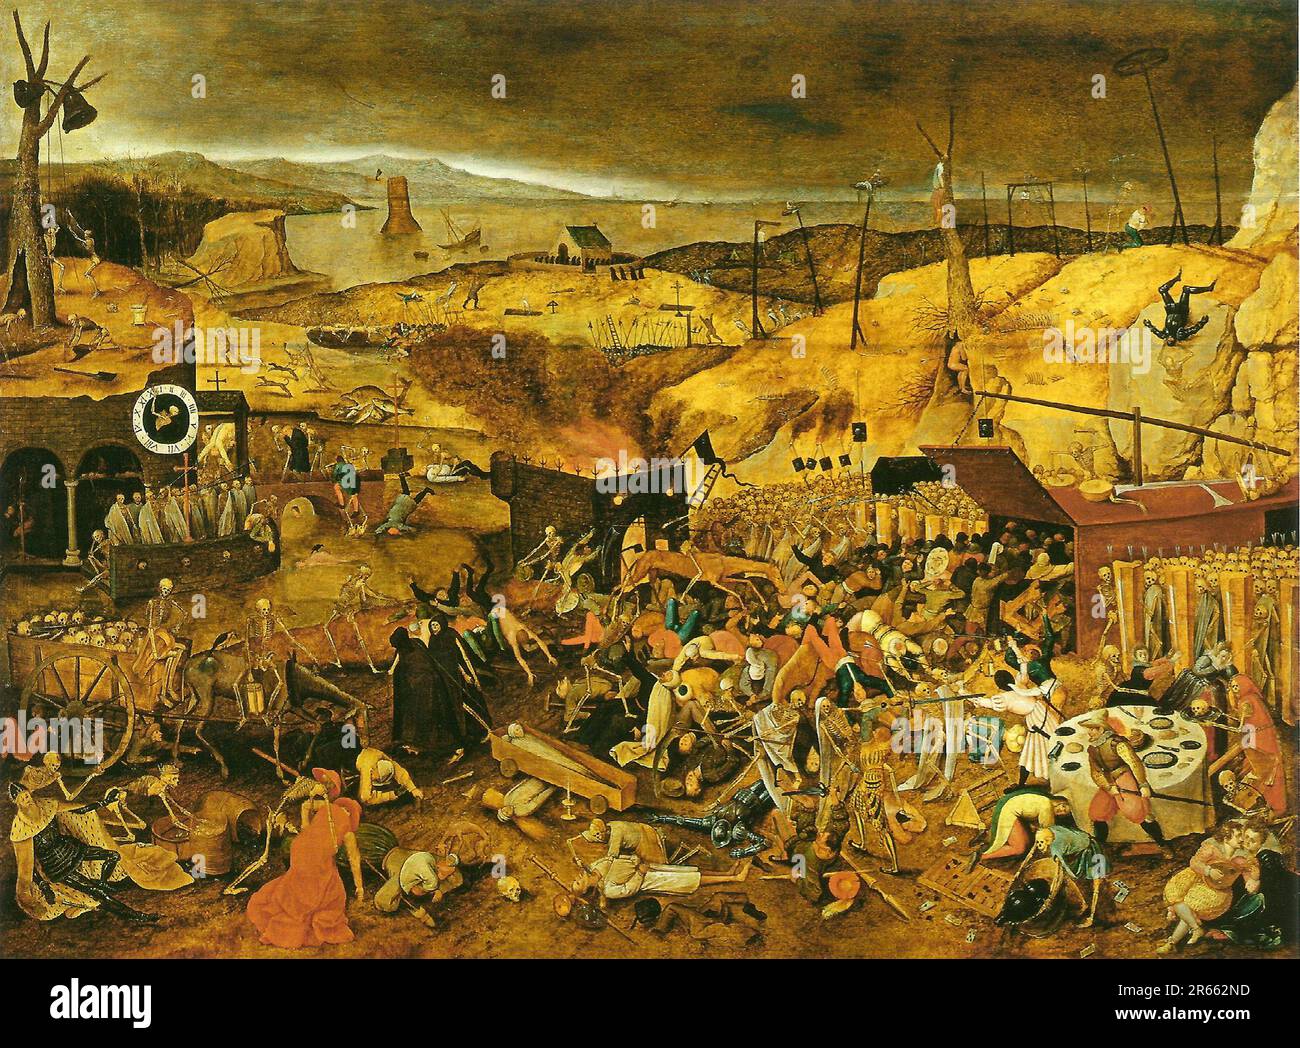 Trionfo della morte dipinto da un seguace di Peter Brueghel il Vecchio. Breughel è stato il pittore più importante del Rinascimento olandese e fiammingo. La sua scelta di soggetti fu influente, rifiutò ritratti e scene religiose a favore di scene locali e contadine. Foto Stock